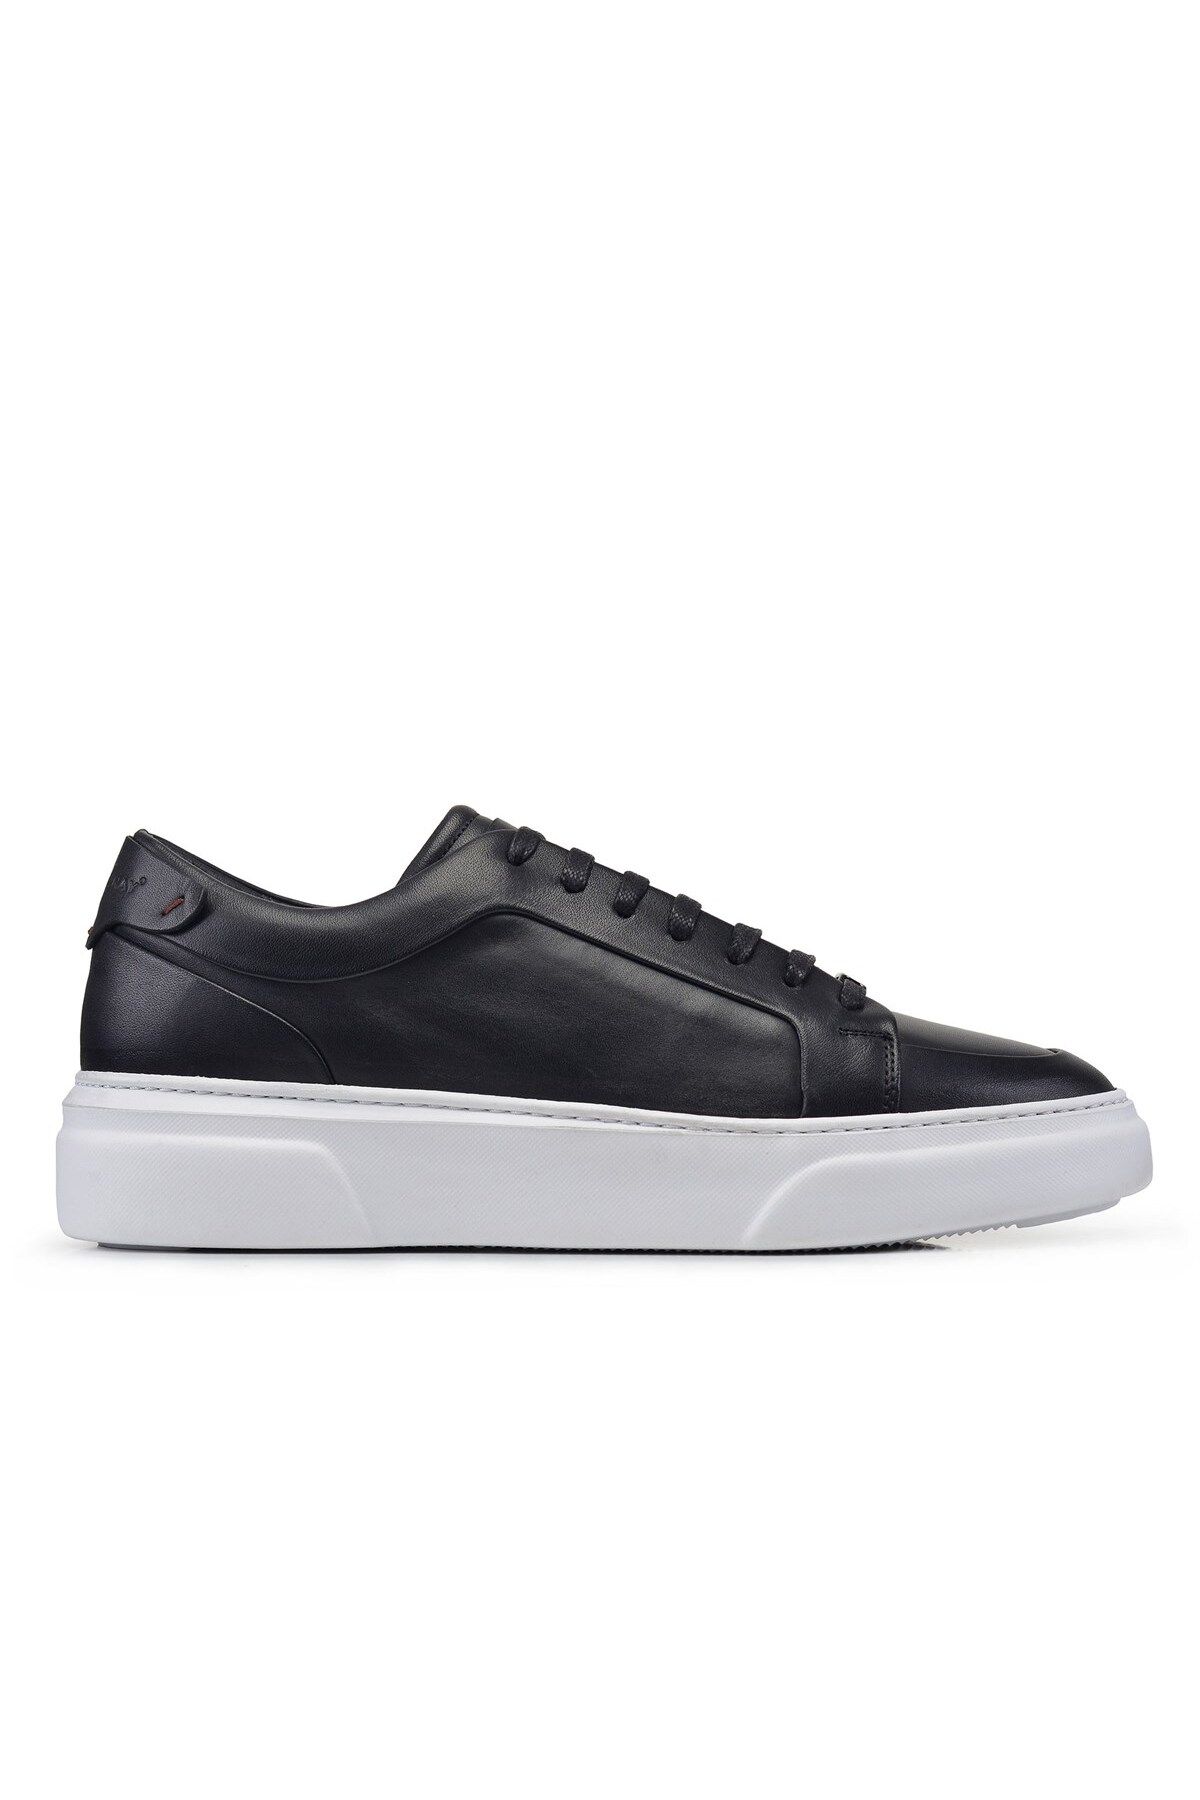 Nevzat Onay Siyah Bağcıklı Sneaker Erkek Ayakkabı -92111-